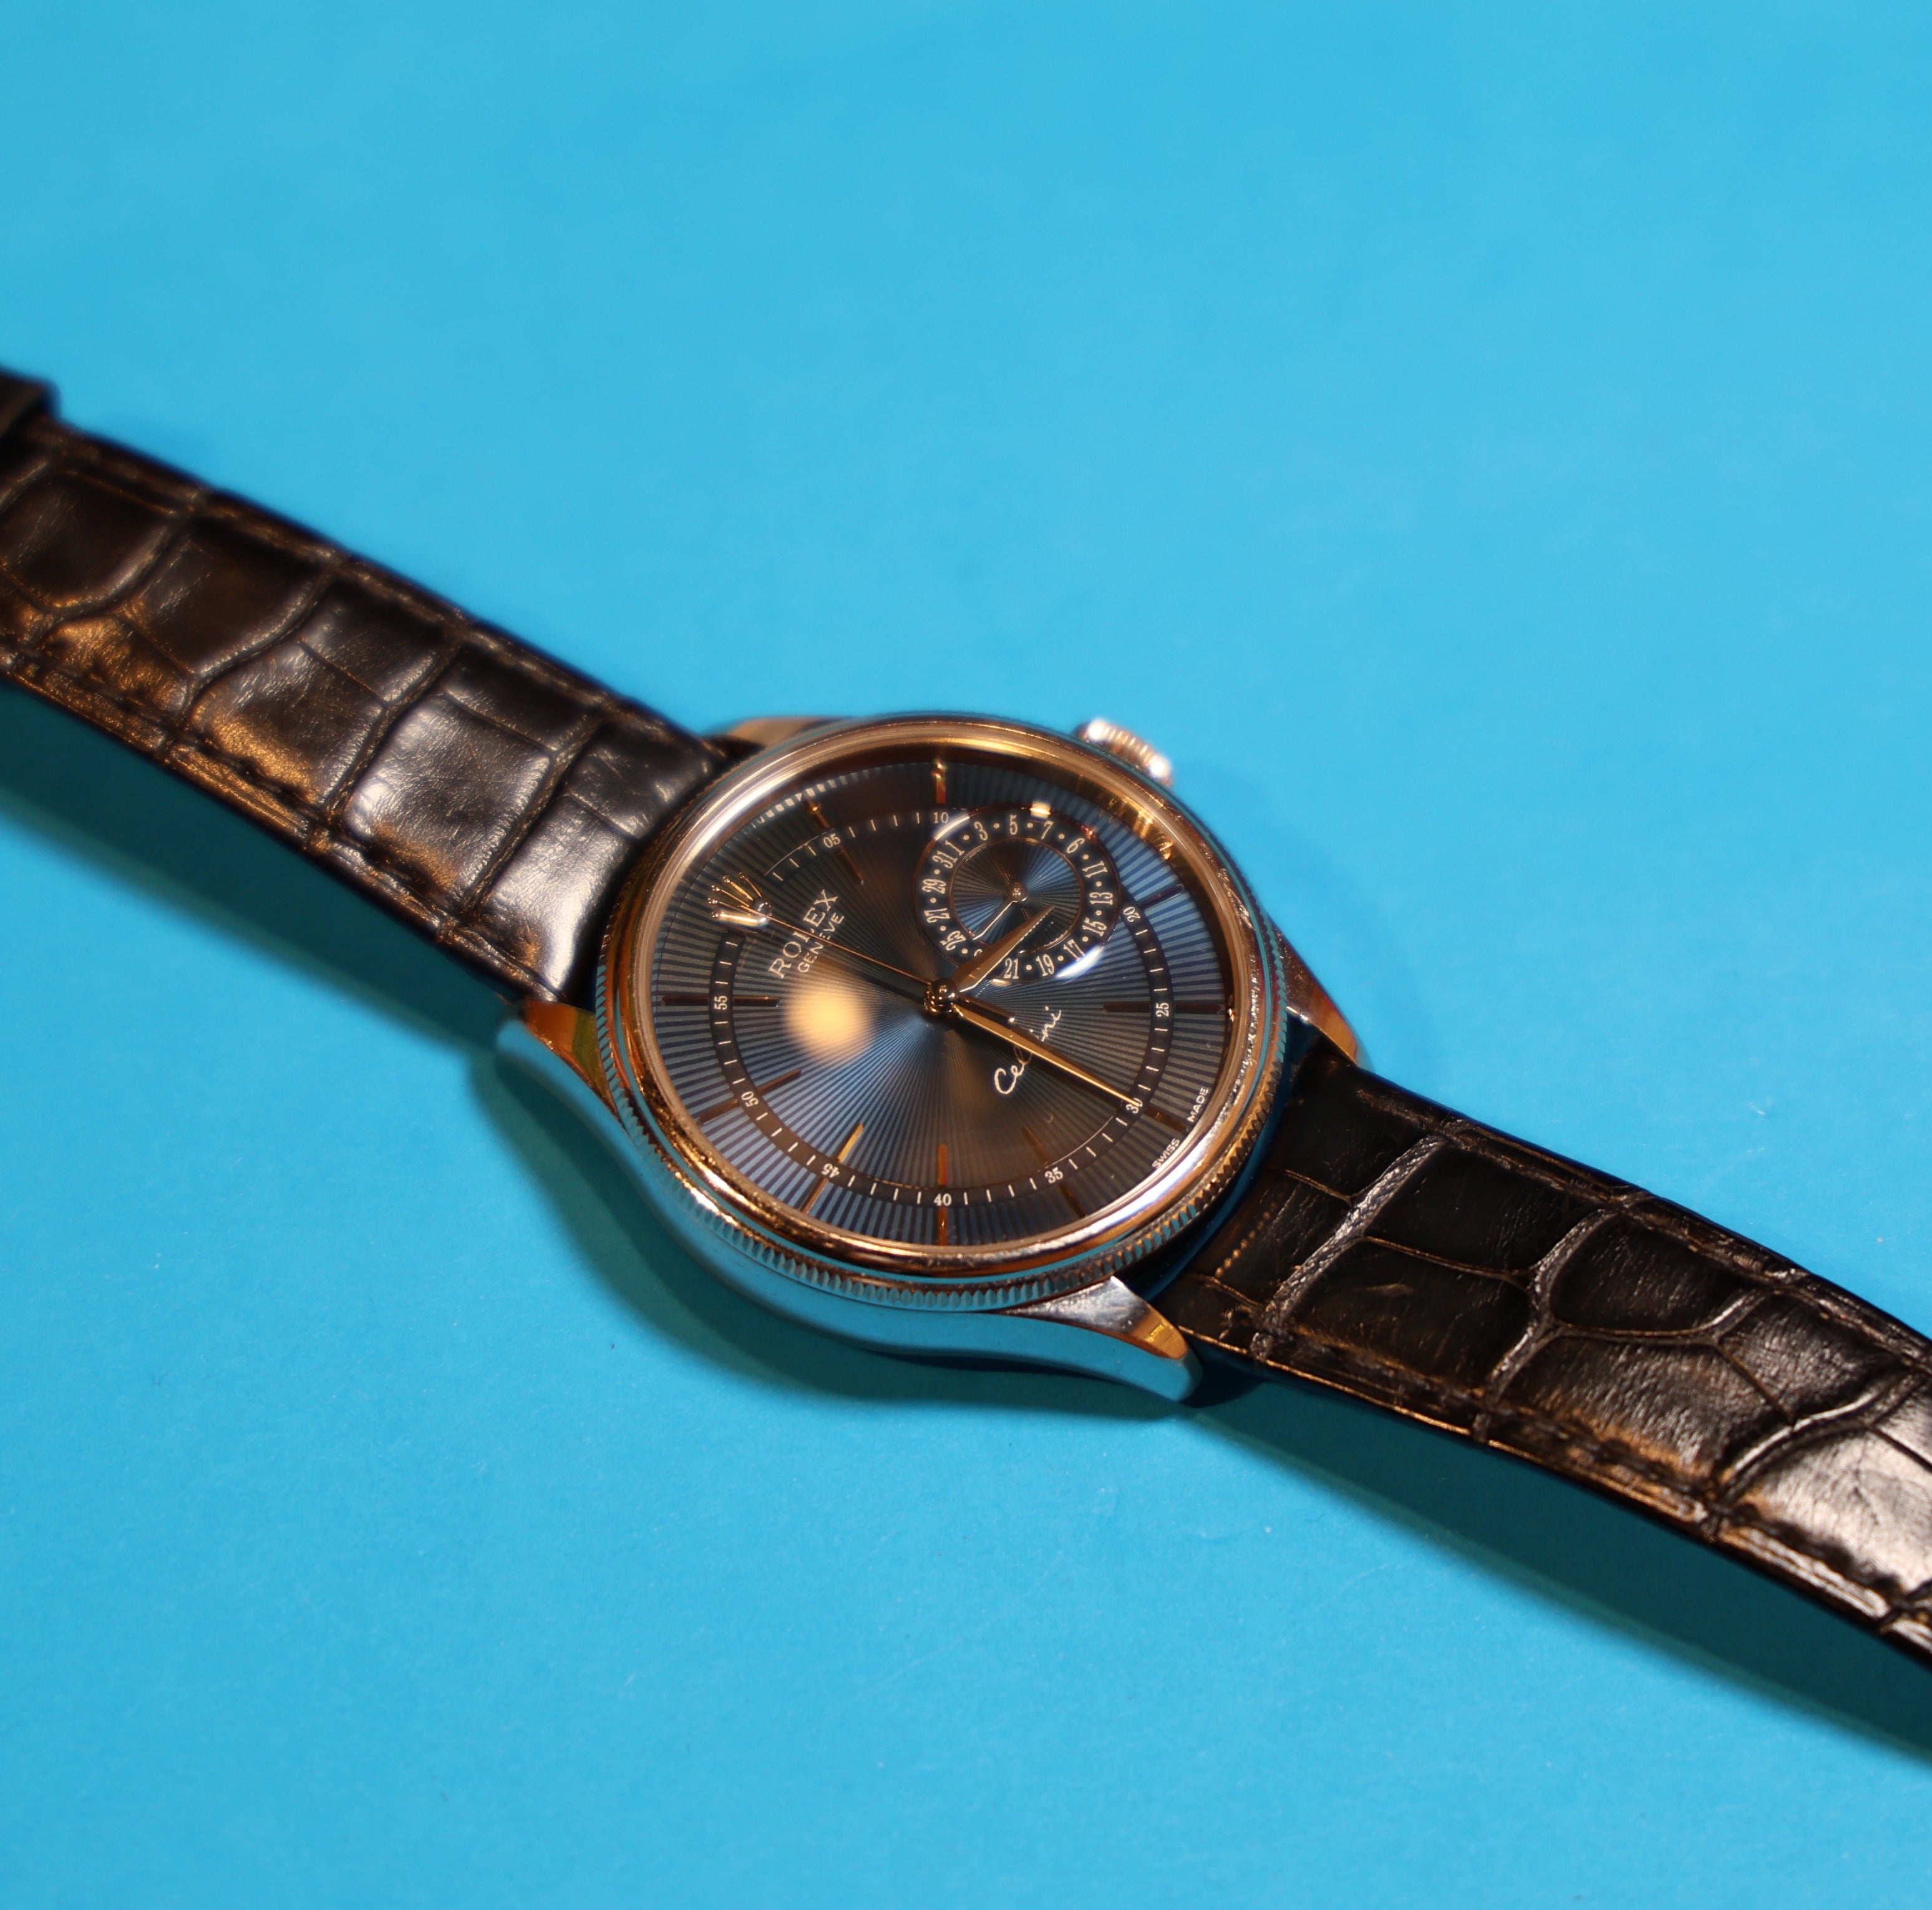 Rolex Cellini Date - Watch